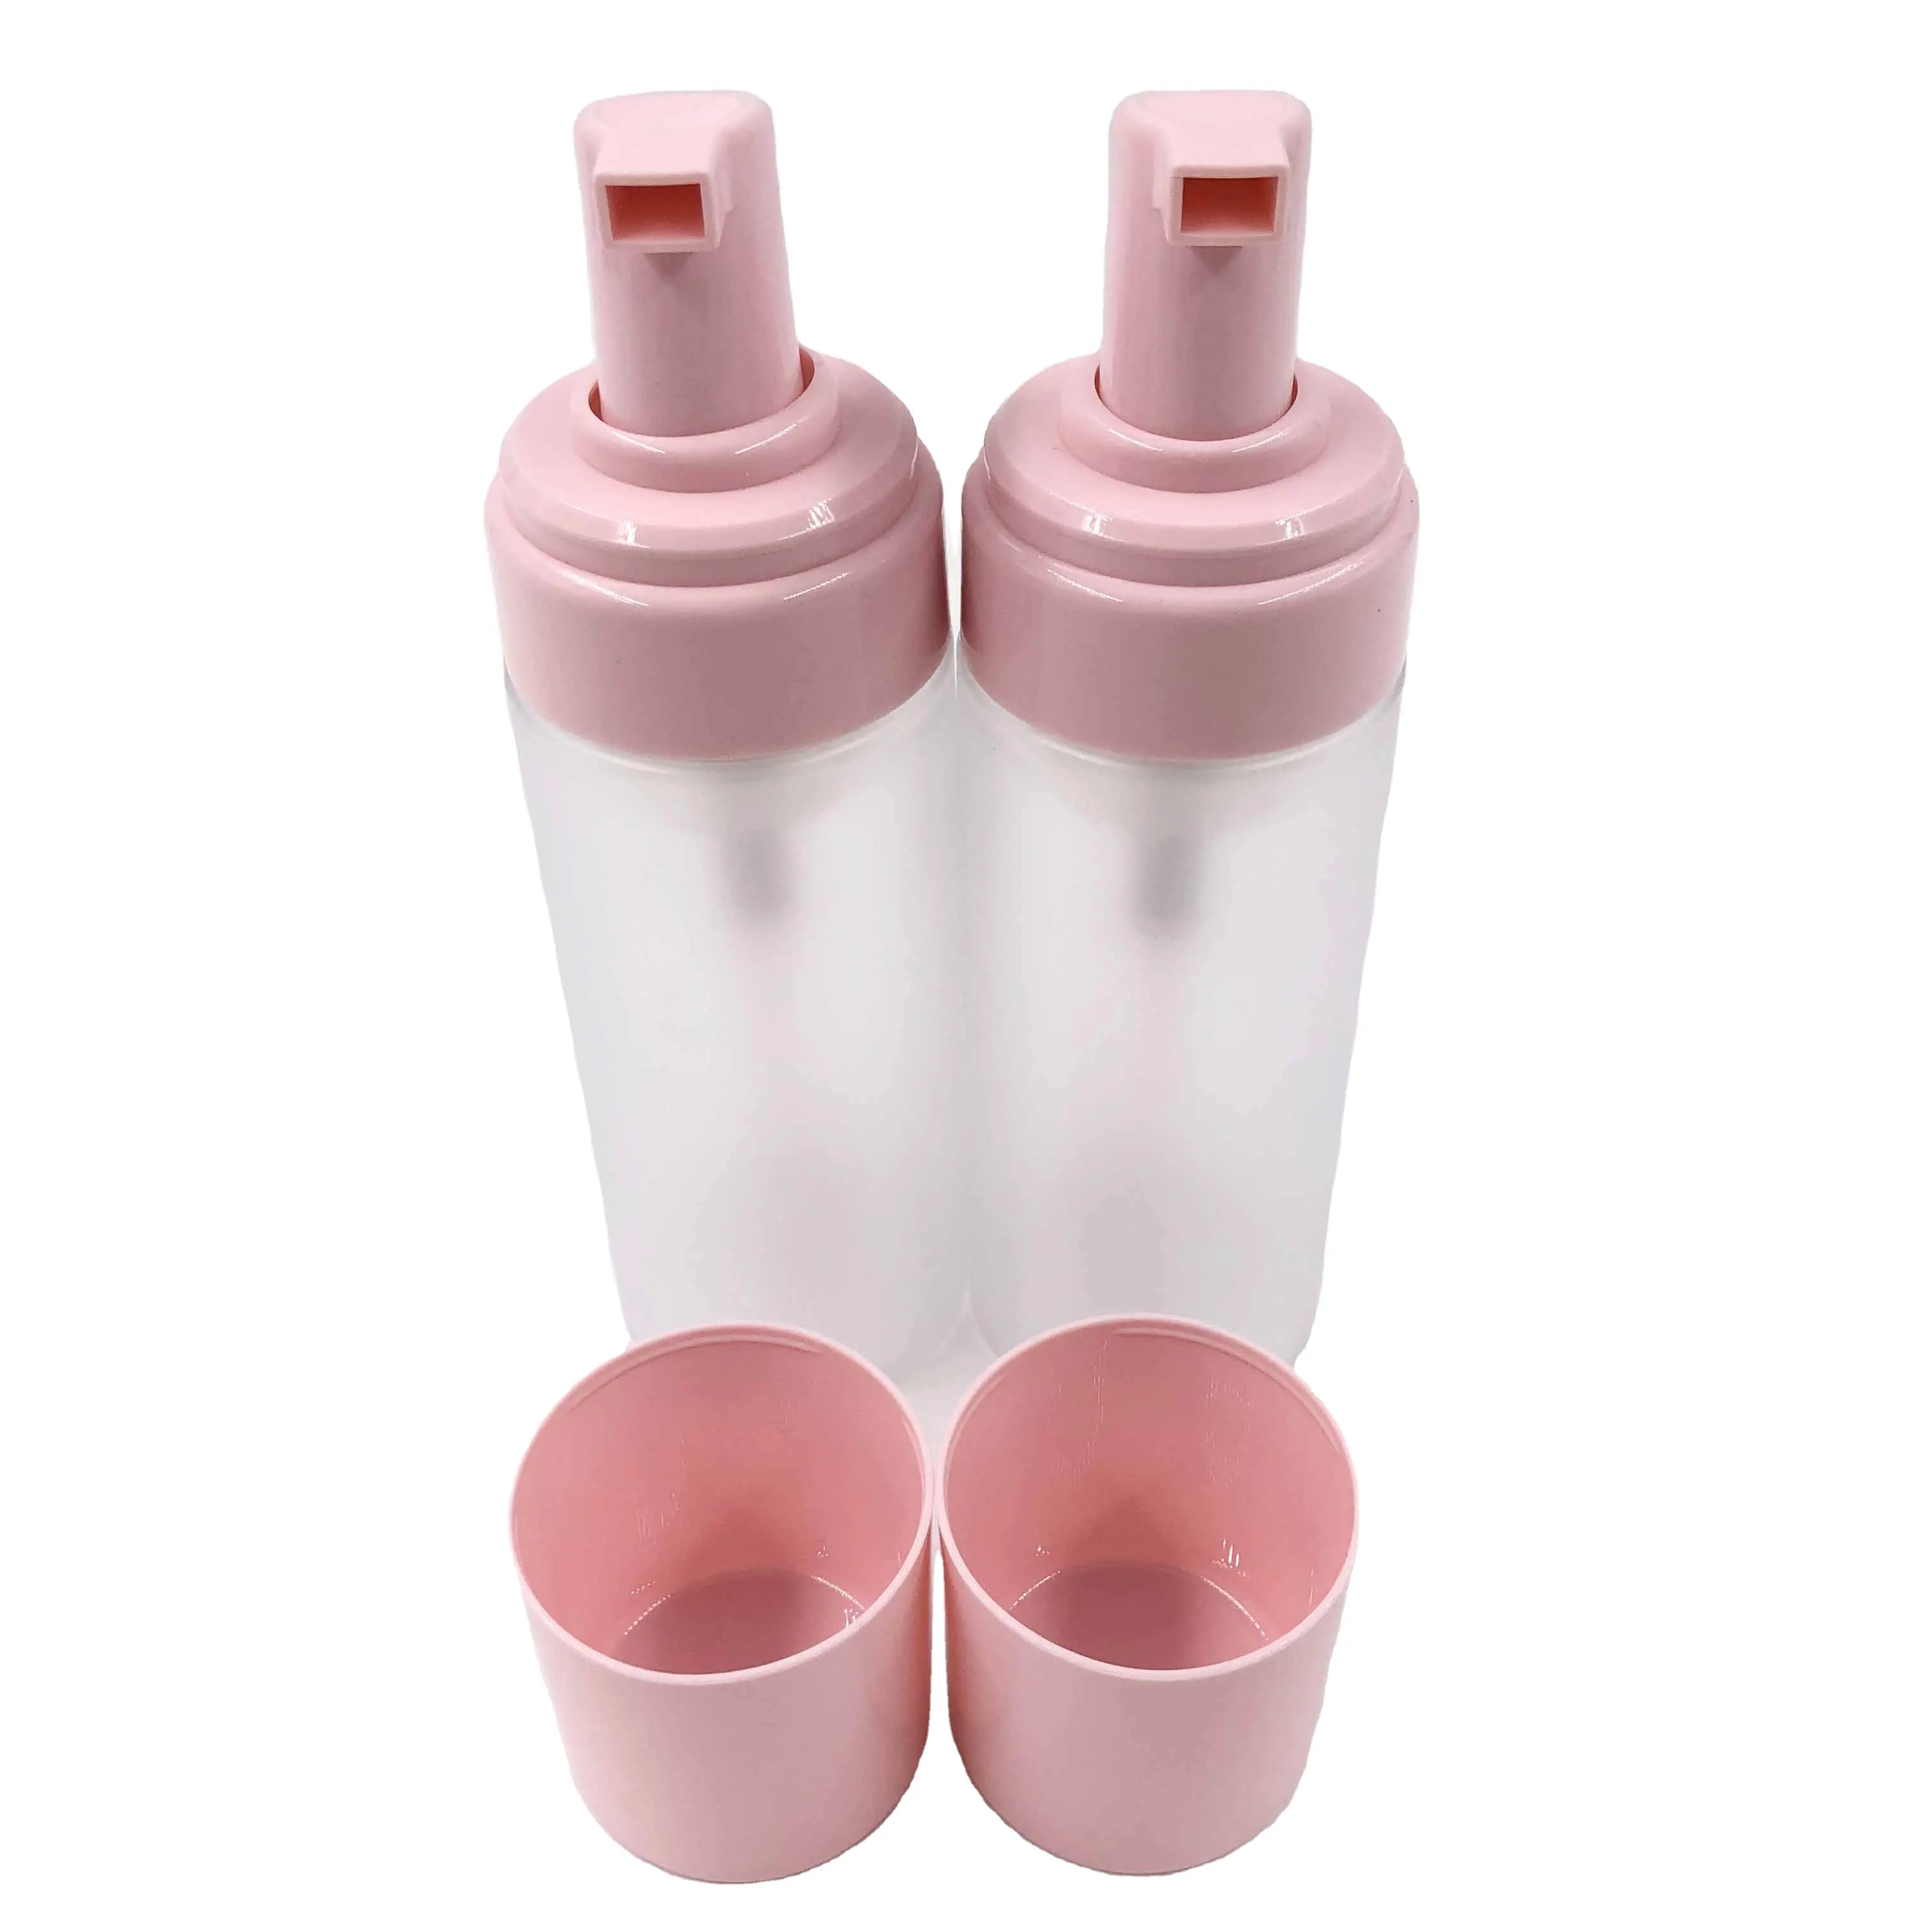 Botella de crema vacía de plástico PET, color rosa mate, de 150ml, para limpieza facial, con cabezal de bomba de pulverización, para embalaje de cosméticos